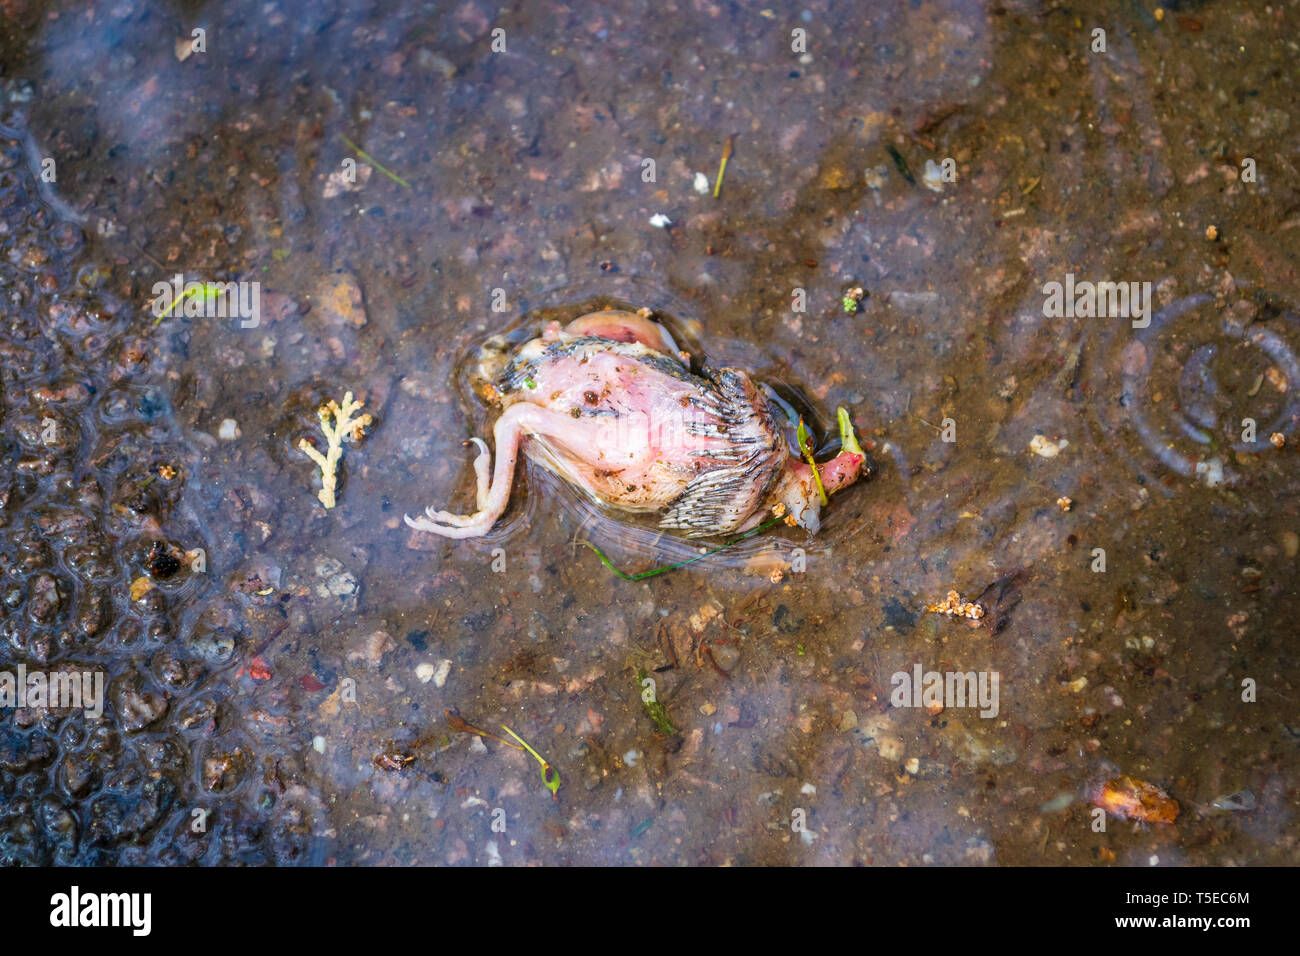 Haussperling eingebettet von seinem Nest in eine Pfütze von Wasser  gefallen, auf Beton, in einem städtischen Park, nach einem regnerischen und  windigen Tag. Tot Englisch spar Stockfotografie - Alamy